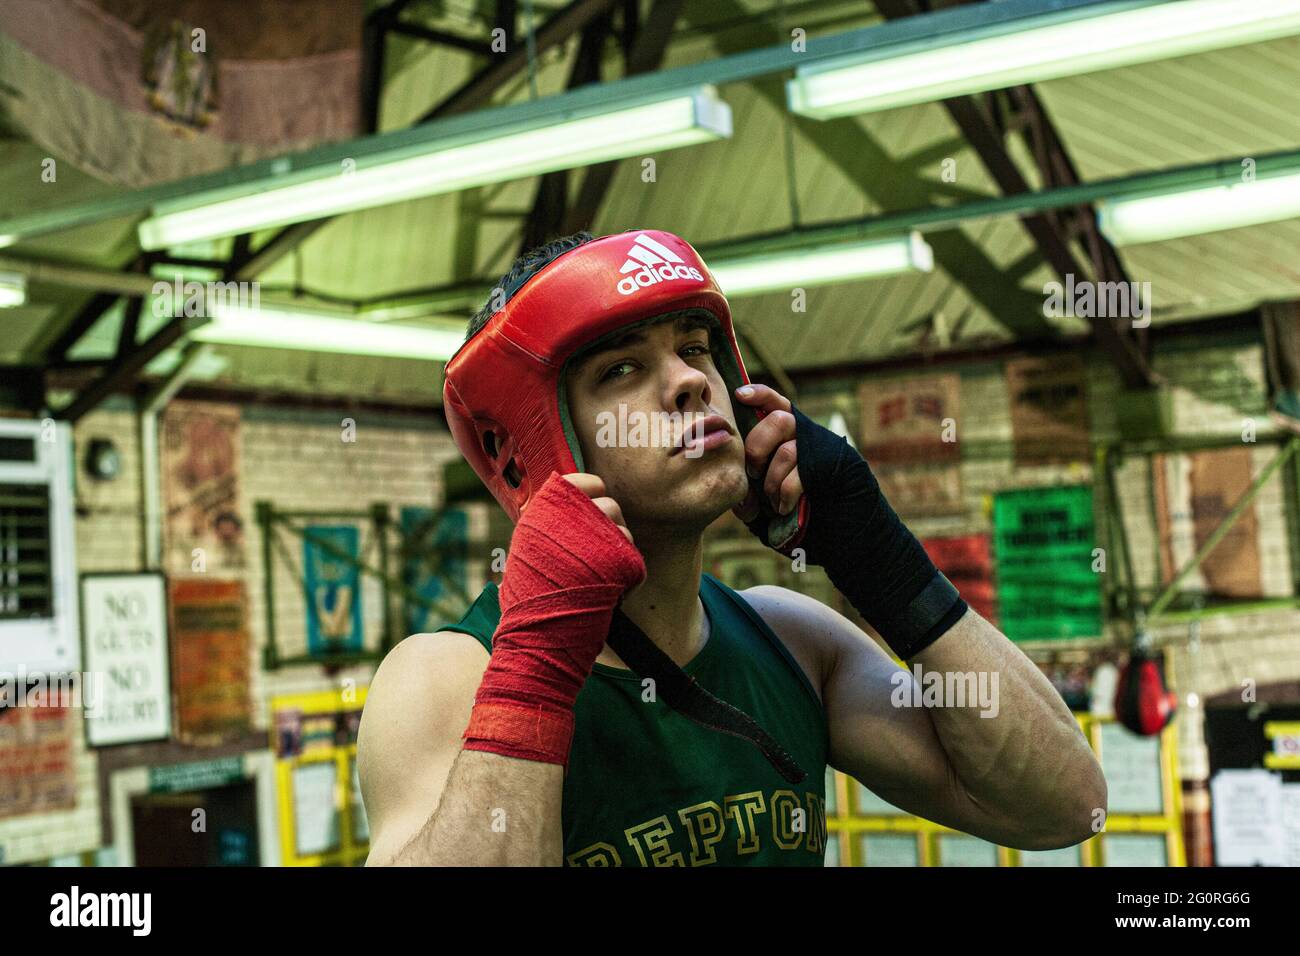 Un jeune homme qui met des protège-têtes de boxe en train de se préparer à la pratique de boxe en club de boxe Banque D'Images